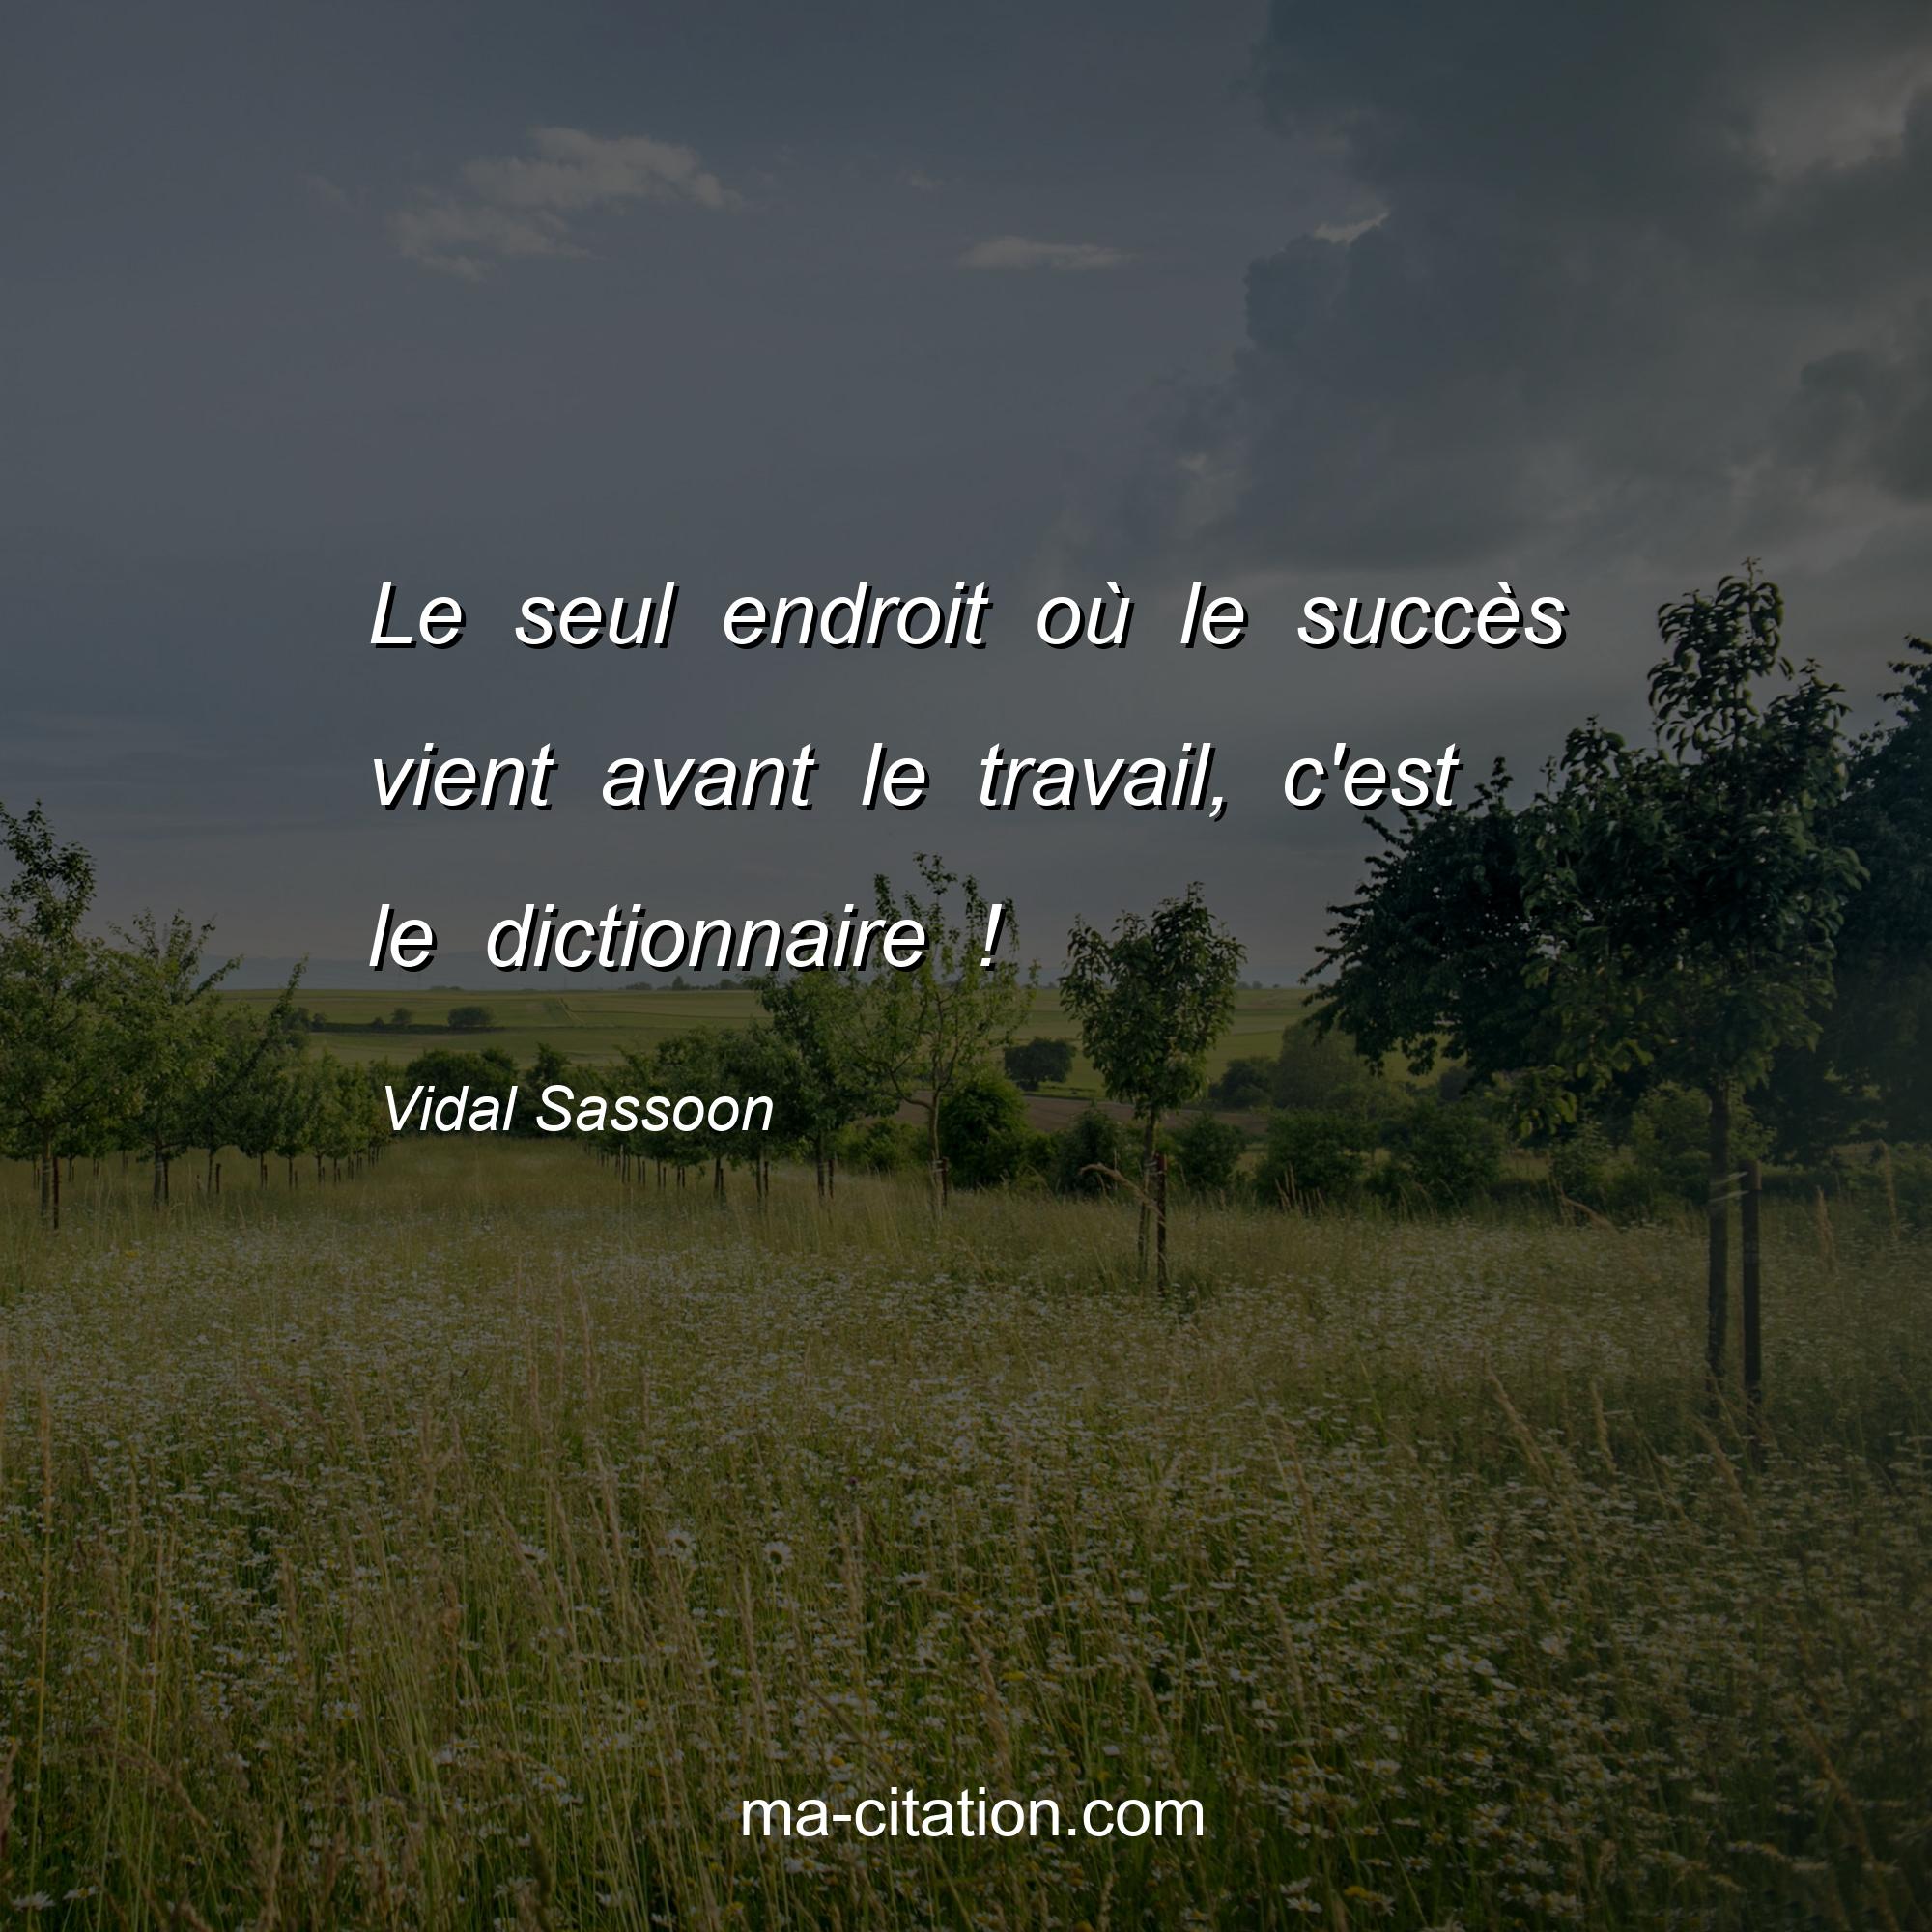 Vidal Sassoon : Le seul endroit où le succès vient avant le travail, c'est le dictionnaire !